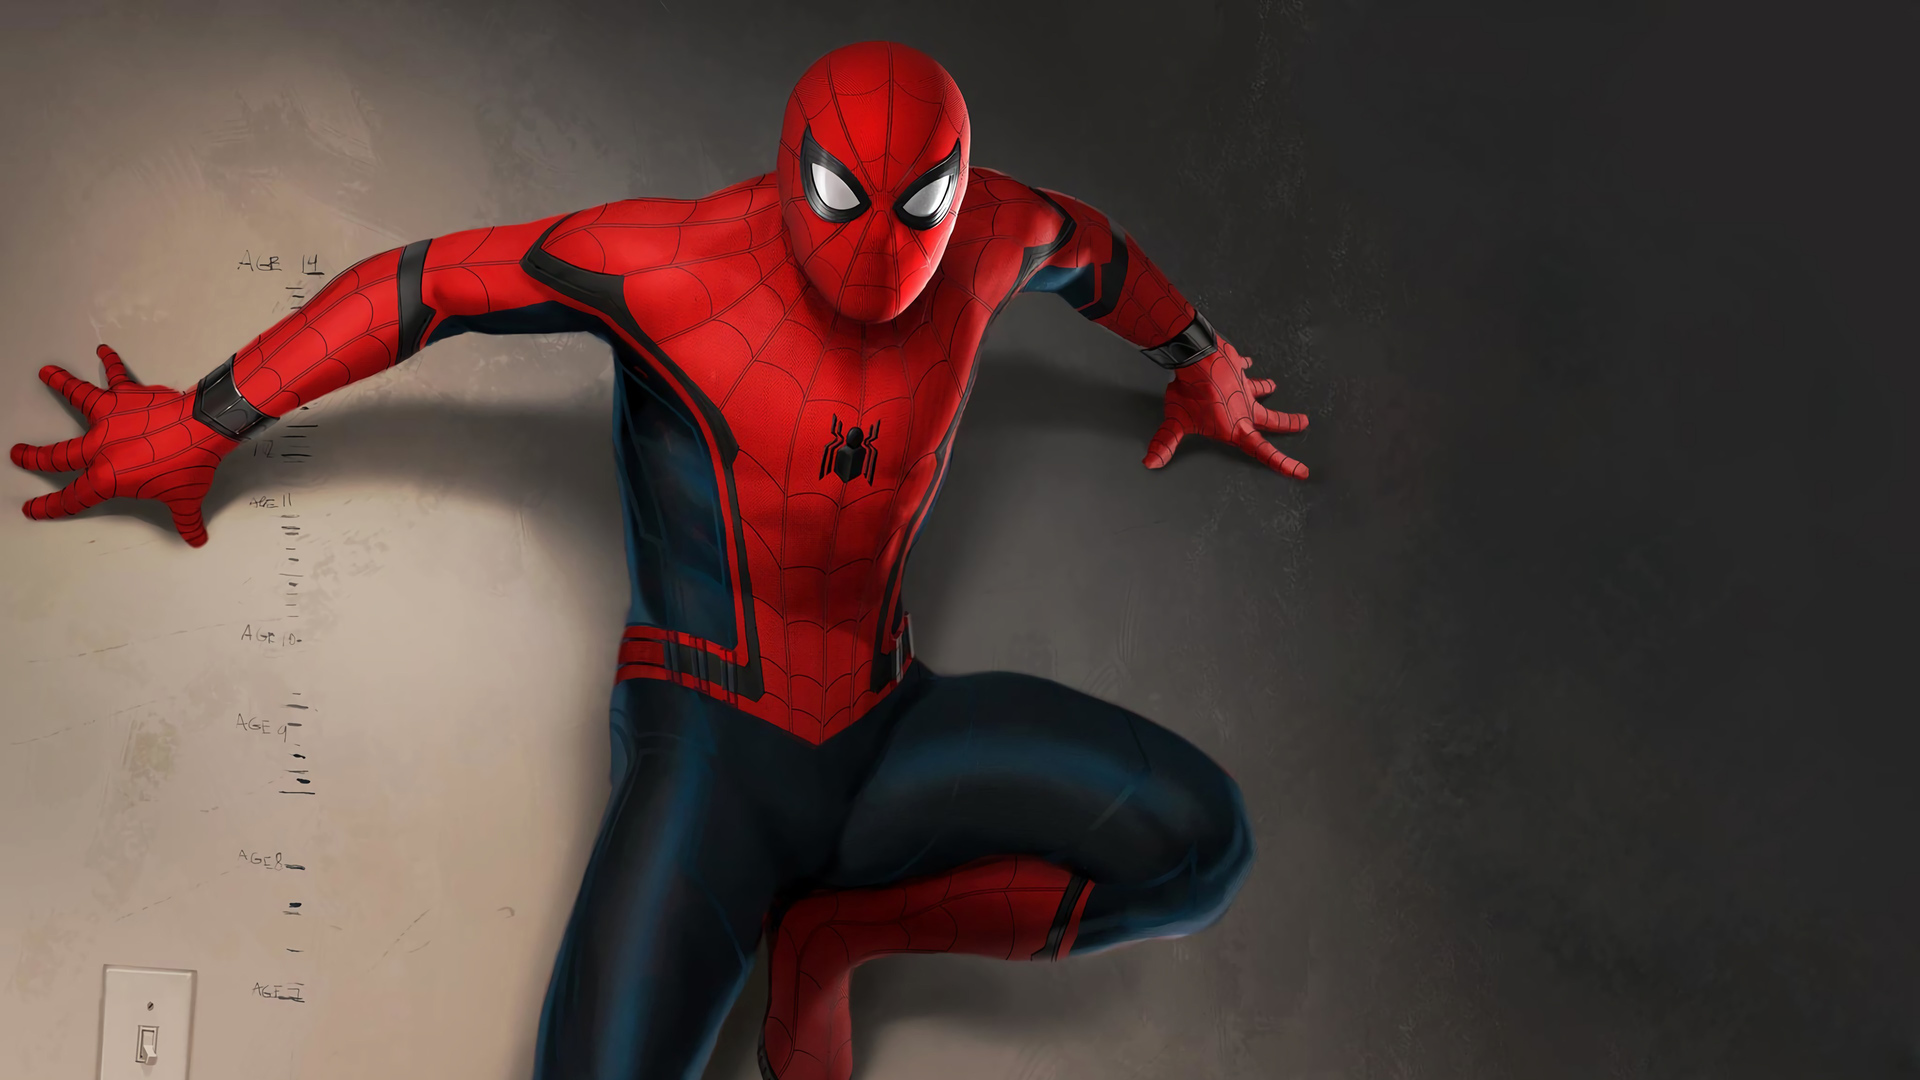 Игрушки Spider-Man (Человек-паук) недорого в интернет-магазине hb-crm.ru